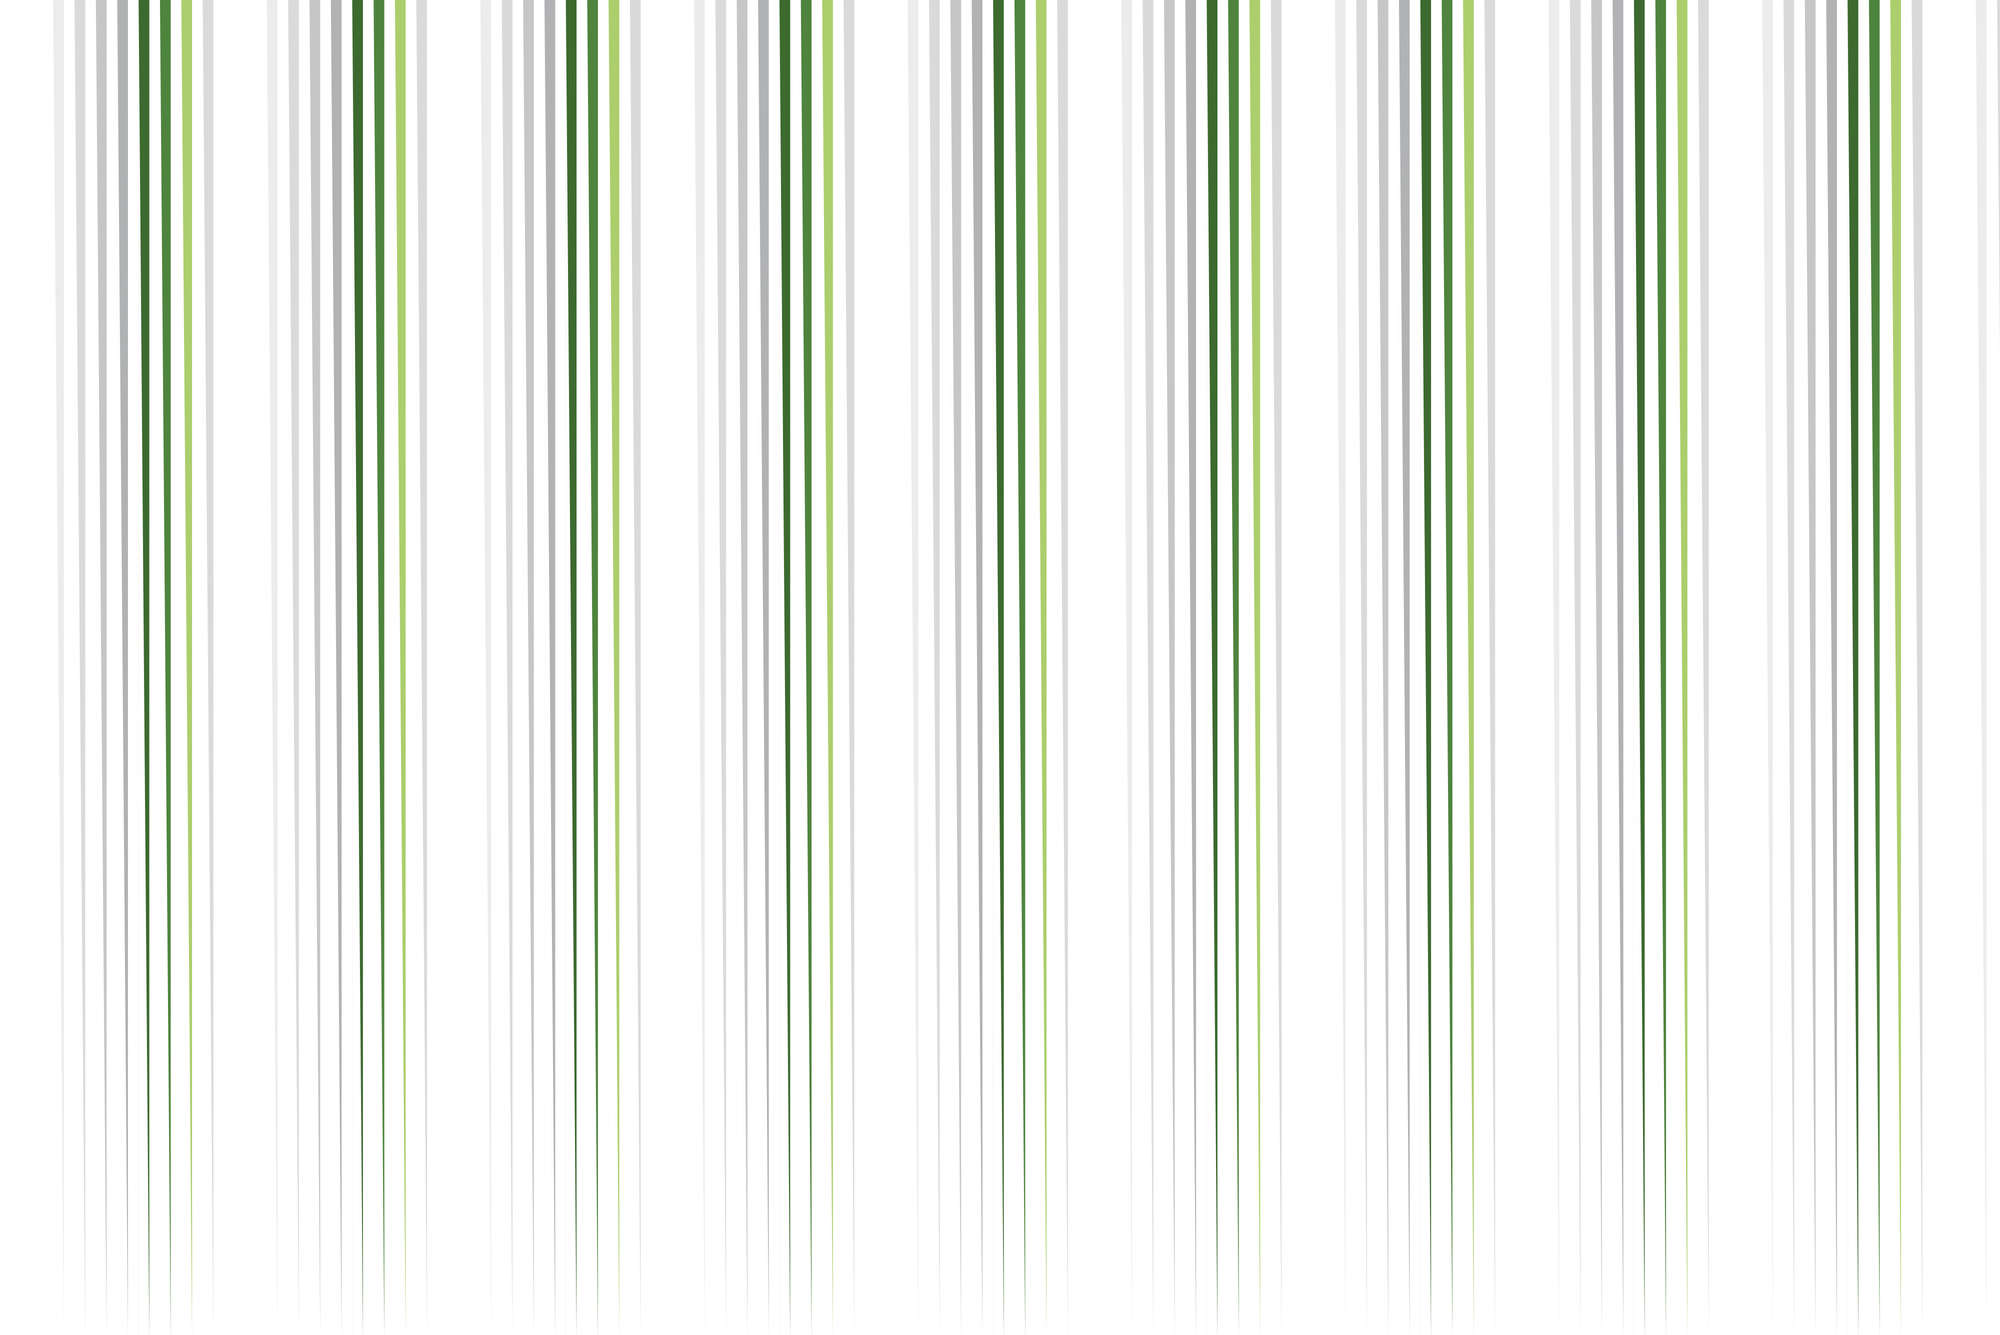             Design Fototapete dünner werdende Streifen weiß grün auf Perlmutt Glattvlies
        